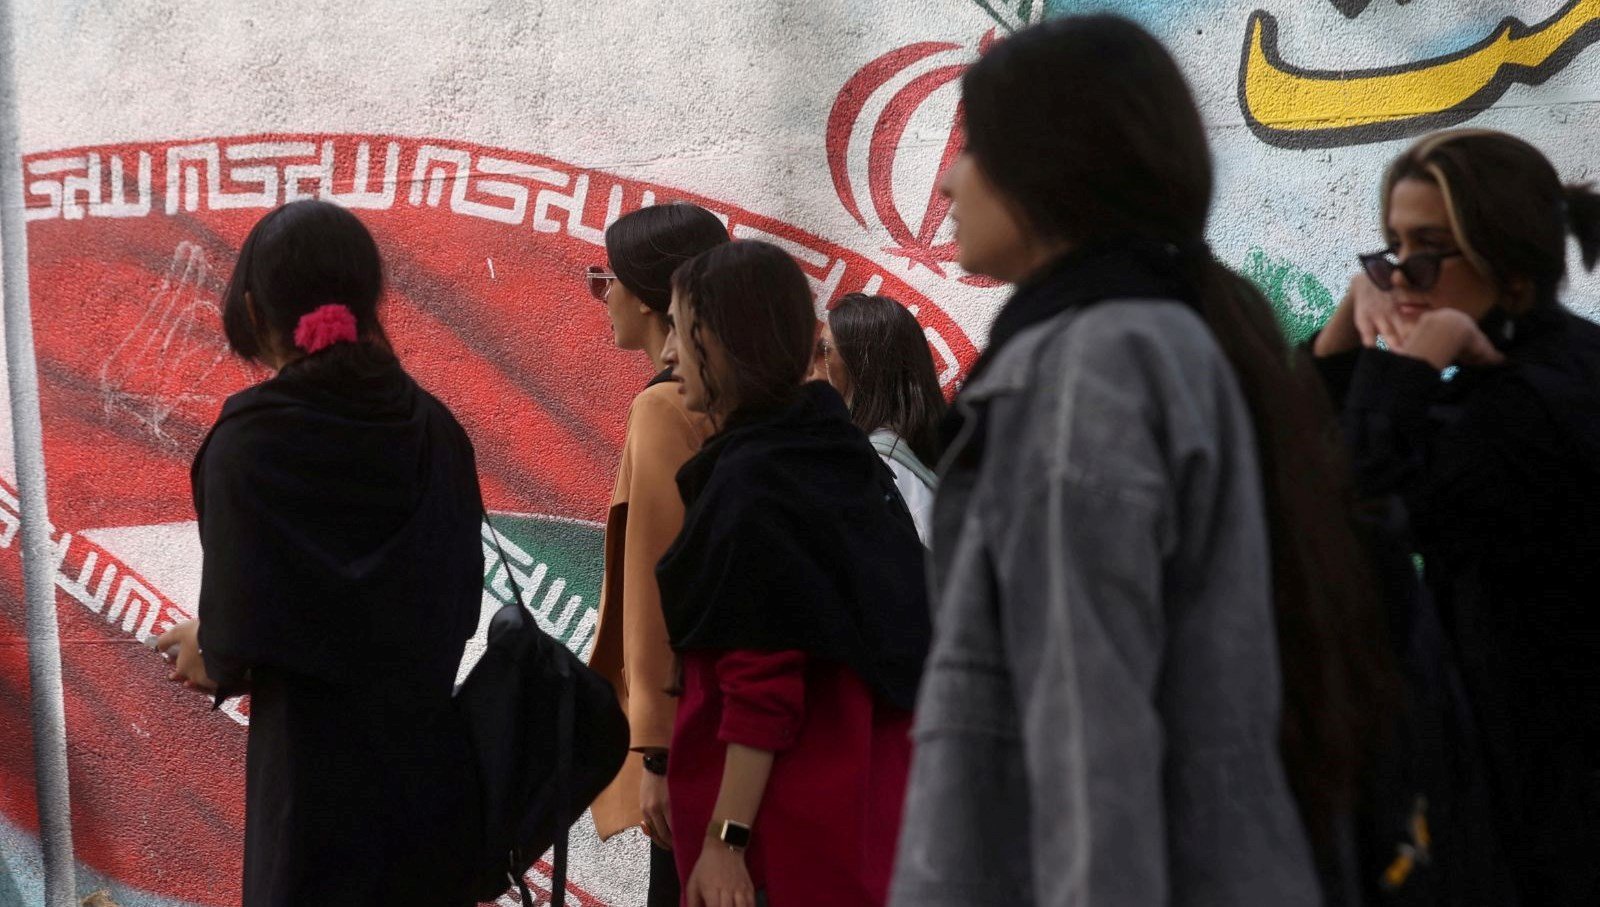 İran’da başörtüsü takmayanlara hizmet veren işletmeler kapatıldı